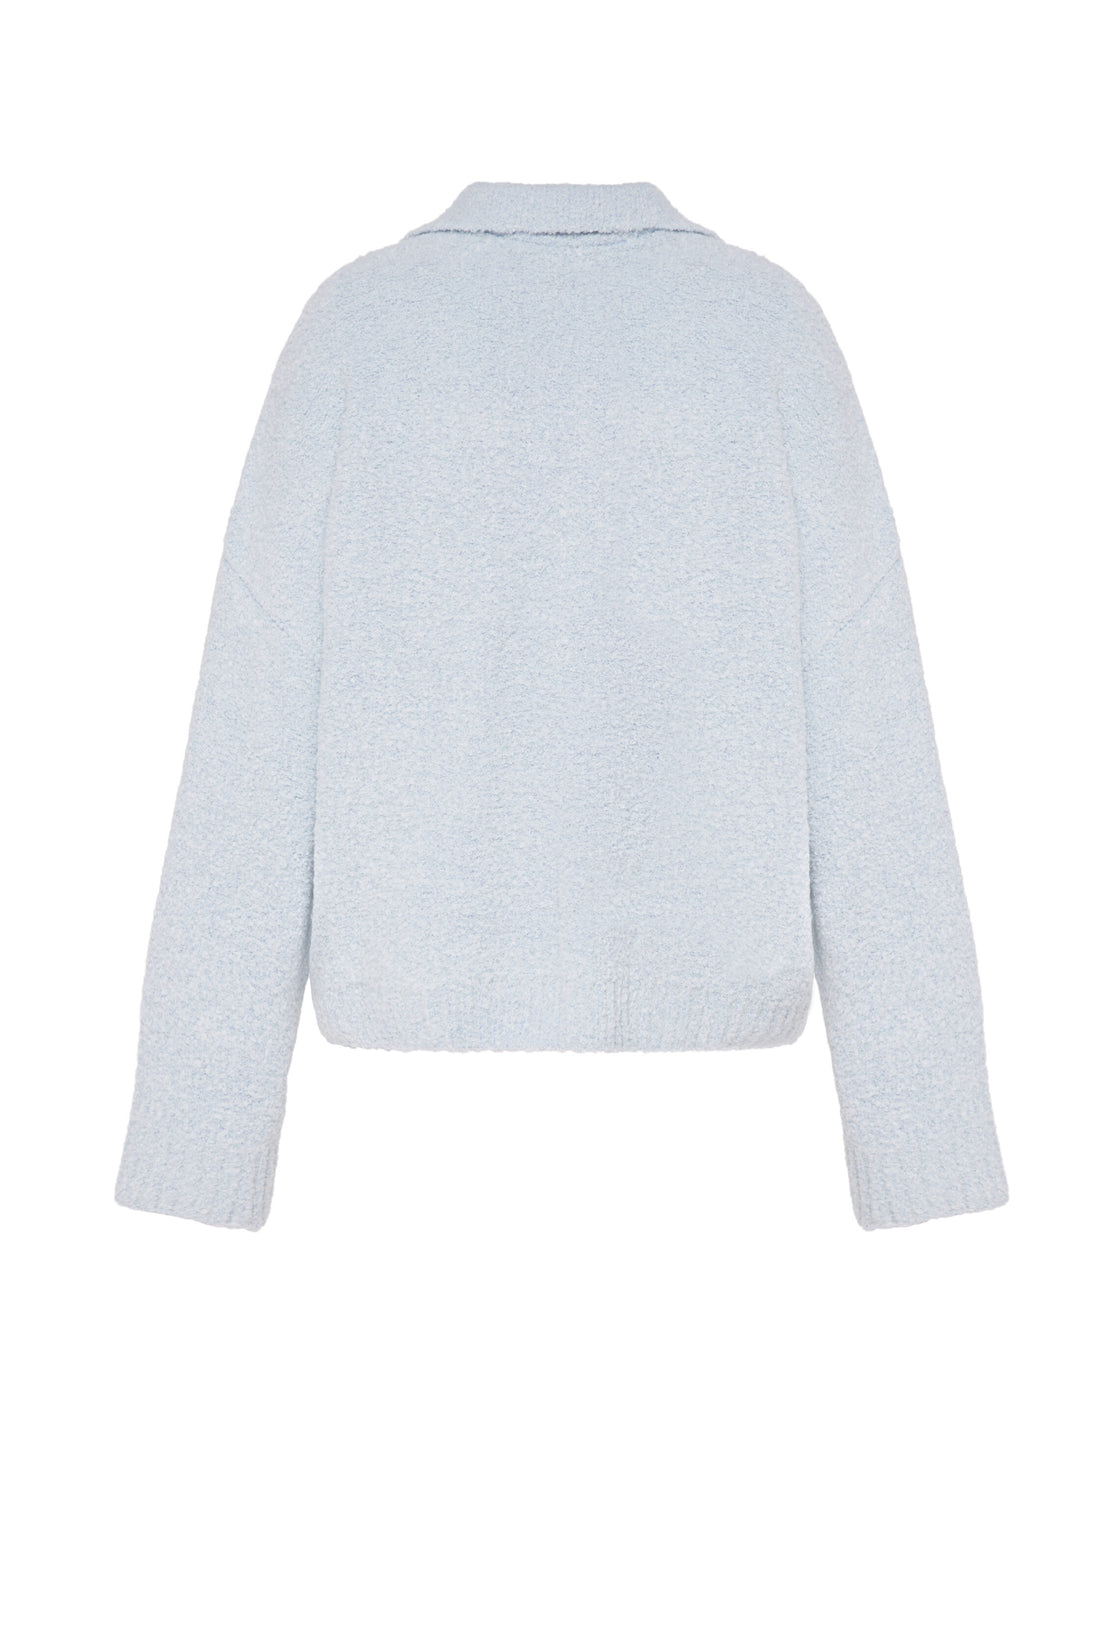 Bouclé sweater, light blue (0202)